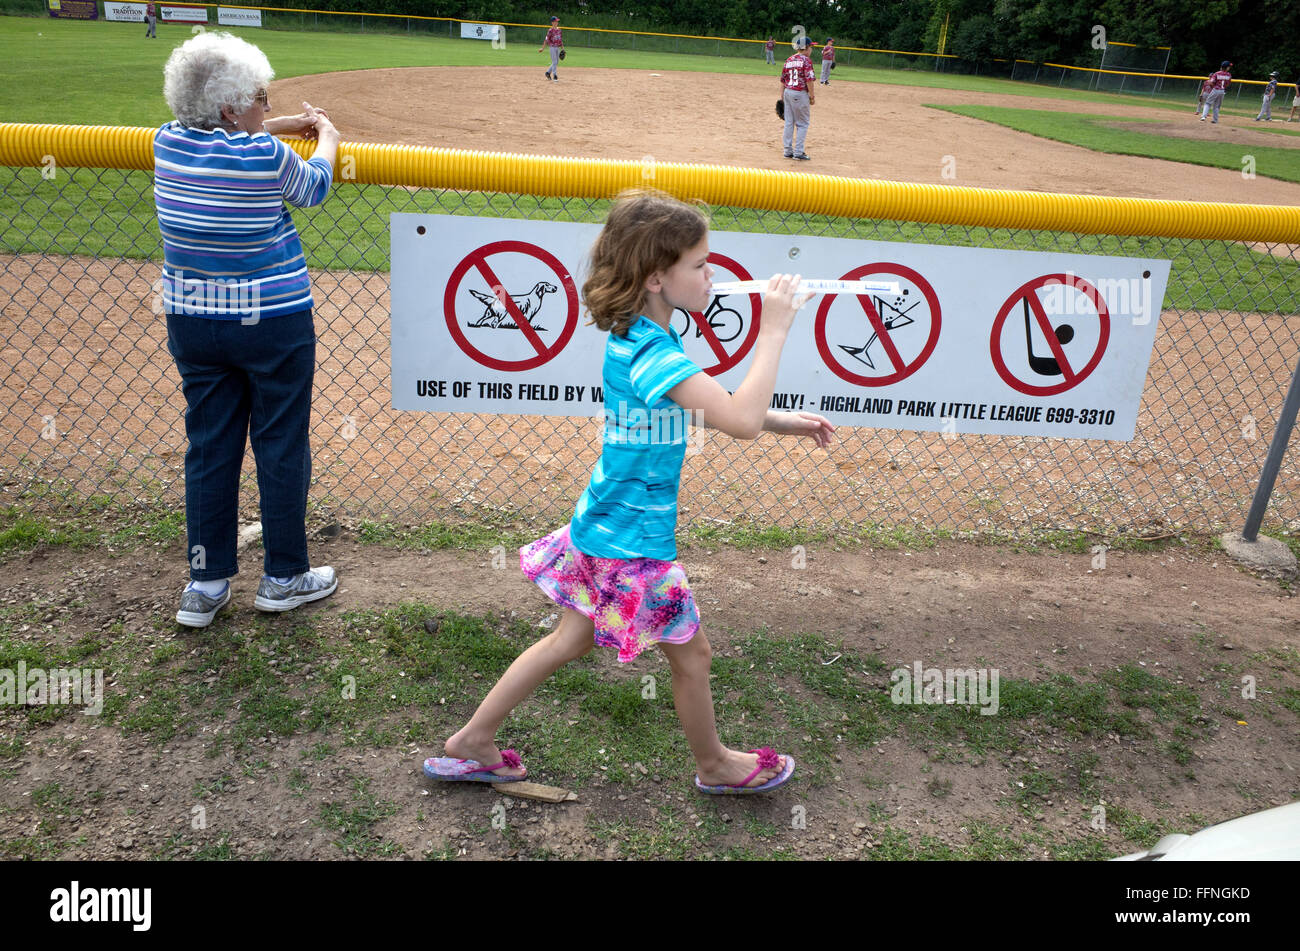 Jeune fille qui marche par ballpark signes eating frozen traiter inconscients de partie en cours. St Paul Minnesota MN USA Banque D'Images